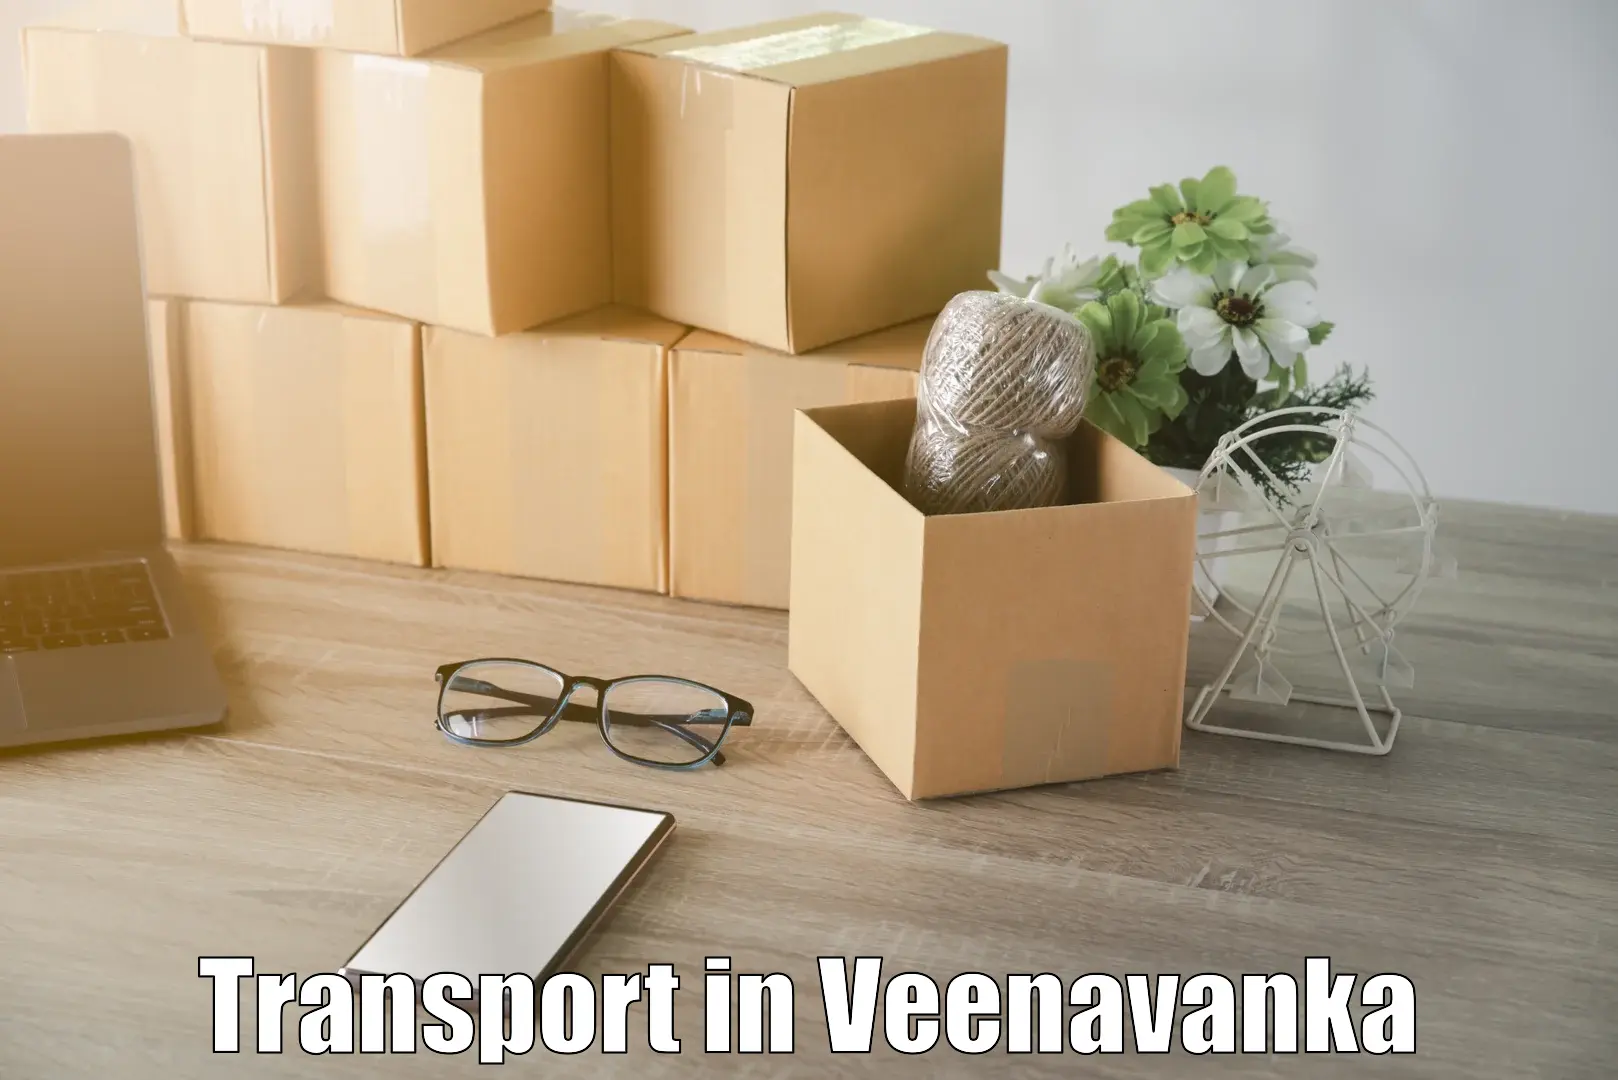 Transport services in Veenavanka